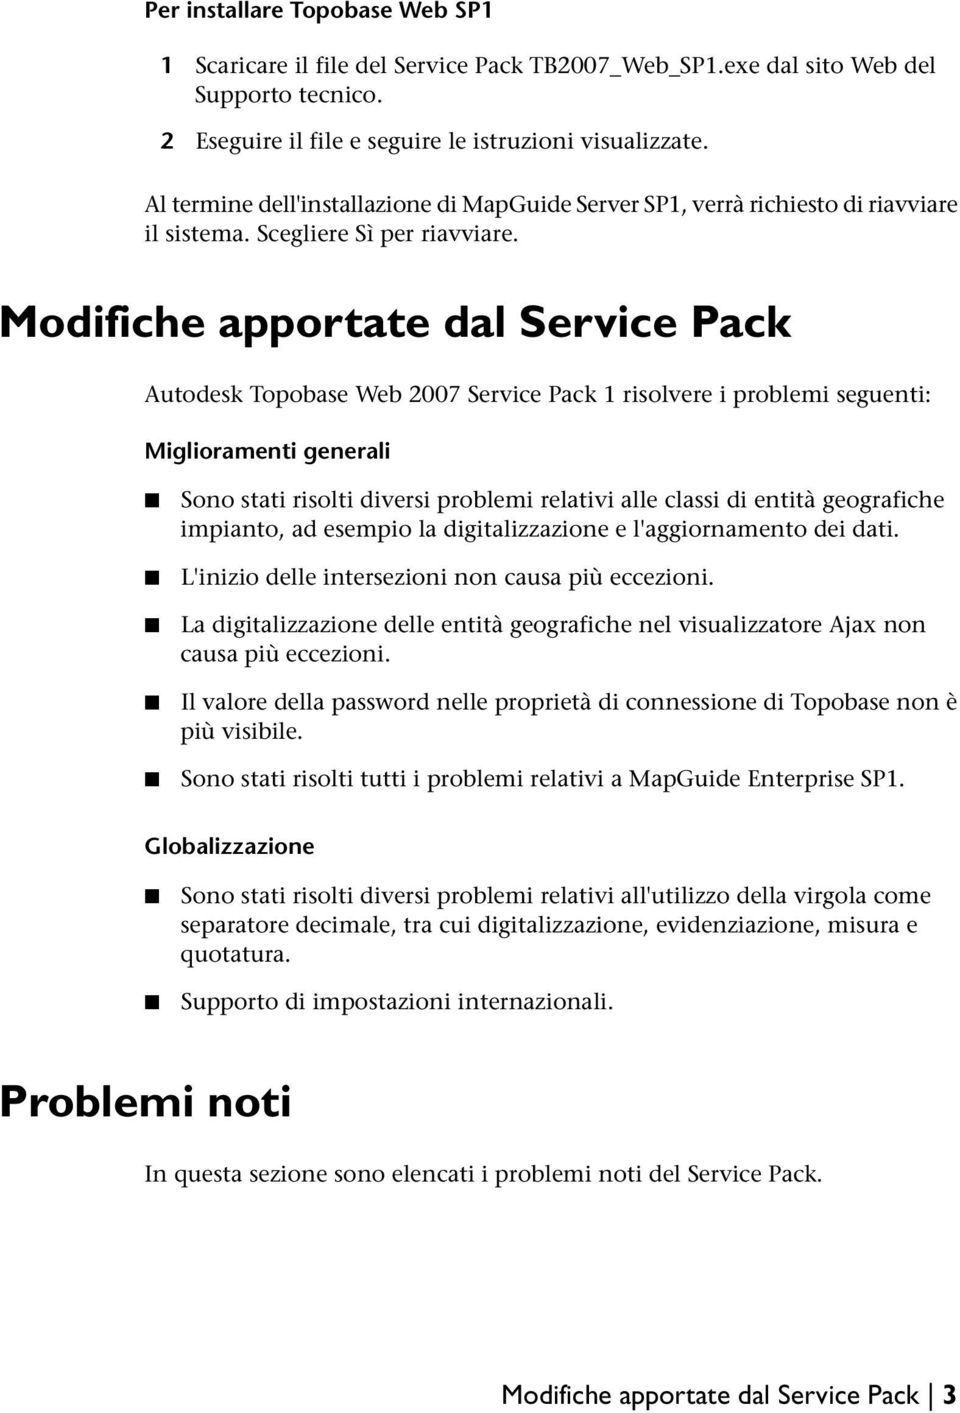 Modifiche apportate dal Service Pack Autodesk Topobase Web 2007 Service Pack 1 risolvere i problemi seguenti: Miglioramenti generali Sono stati risolti diversi problemi relativi alle classi di entità